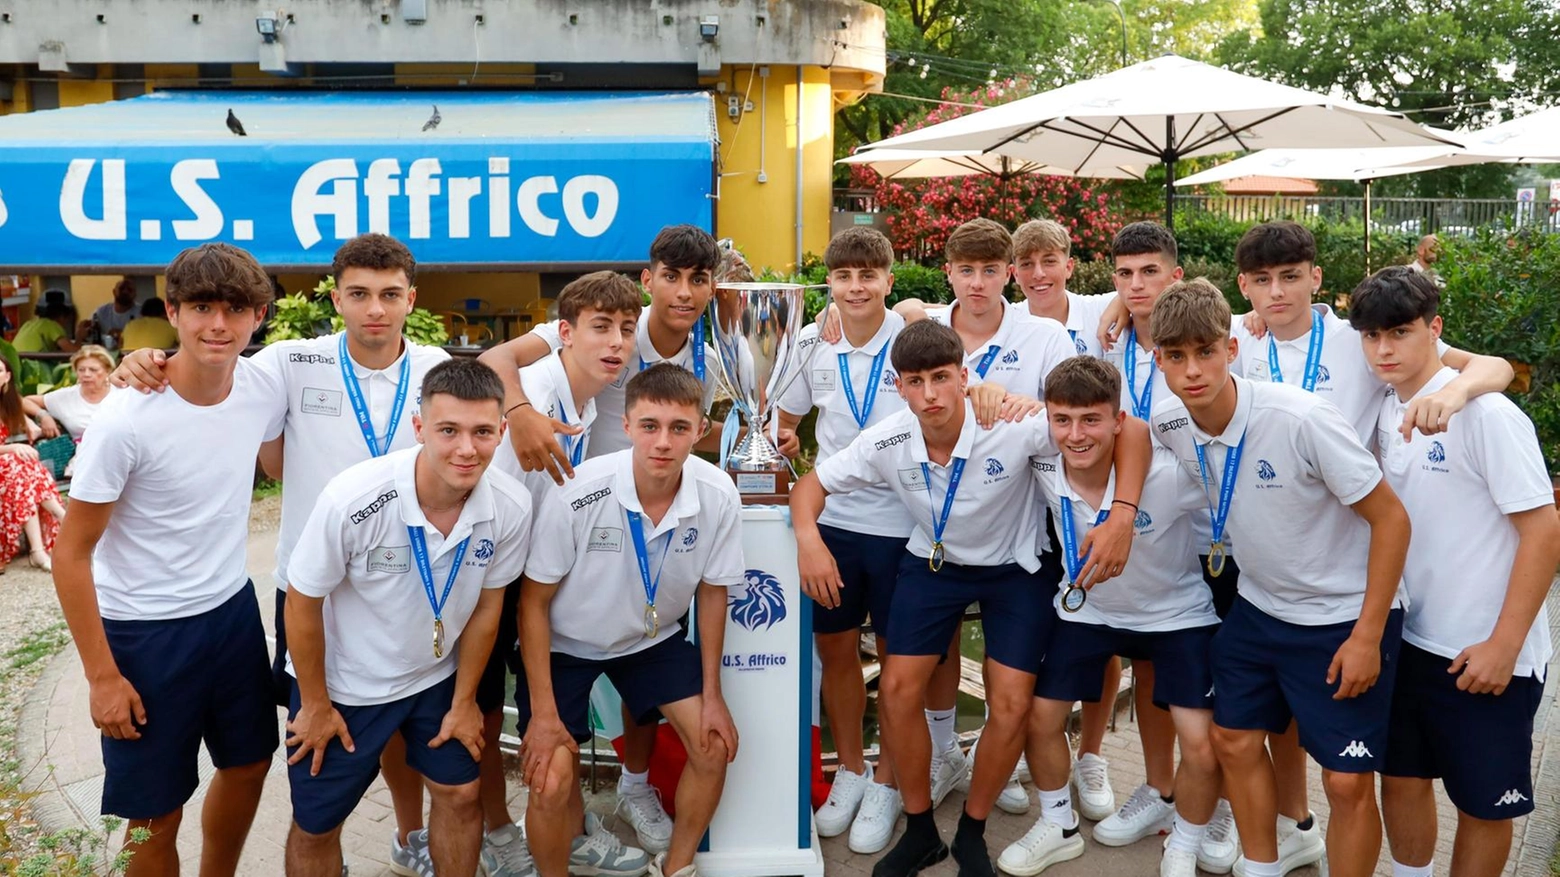 L'Us Affrico festeggia una stagione eccezionale con successi storici nel calcio giovanile toscano e italiano, culminati con la vittoria degli Allievi Under 17 campioni d'Italia.